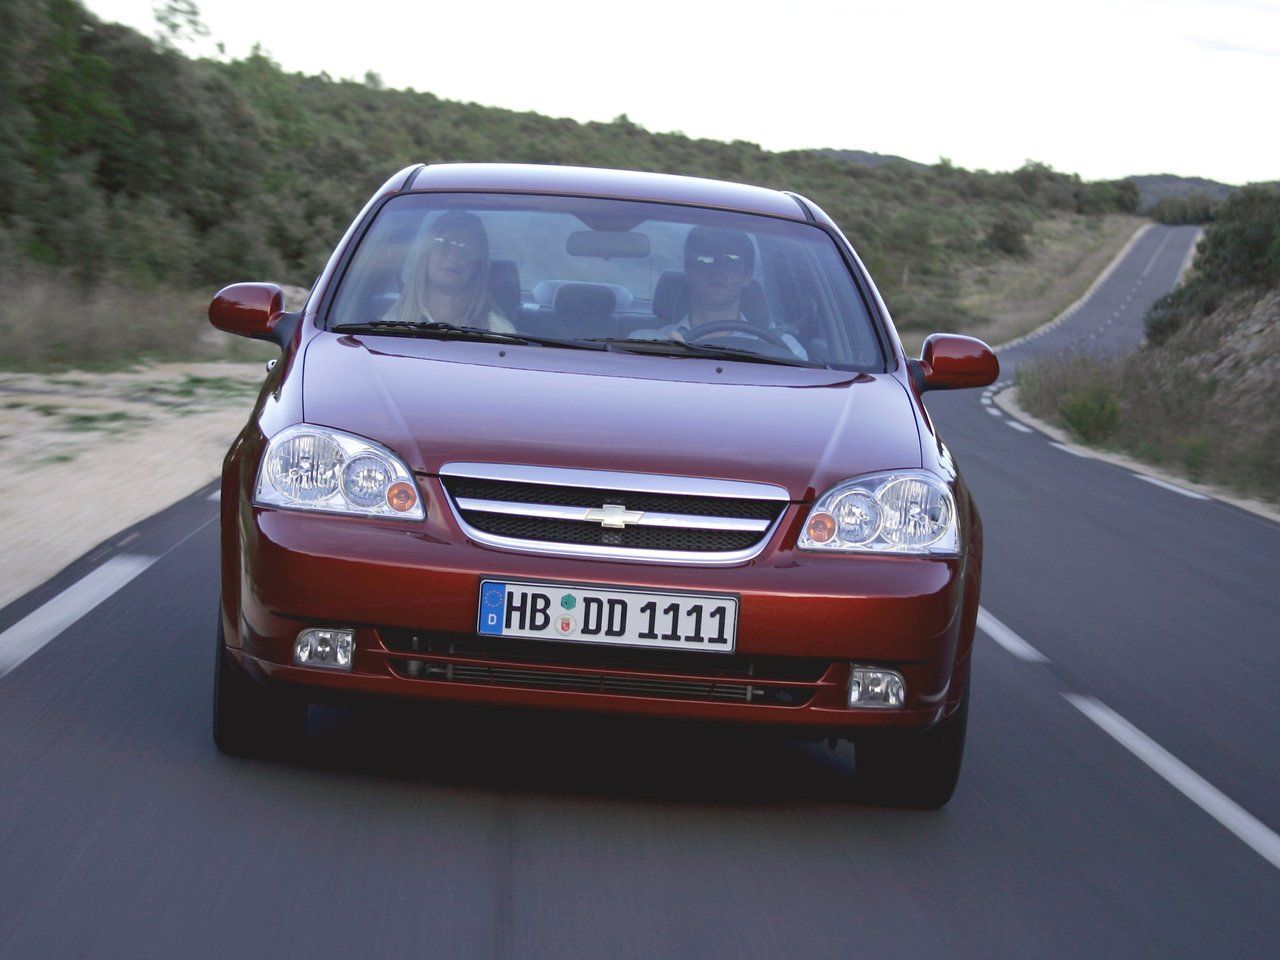 Chevrolet Lacetti (2004-2013)